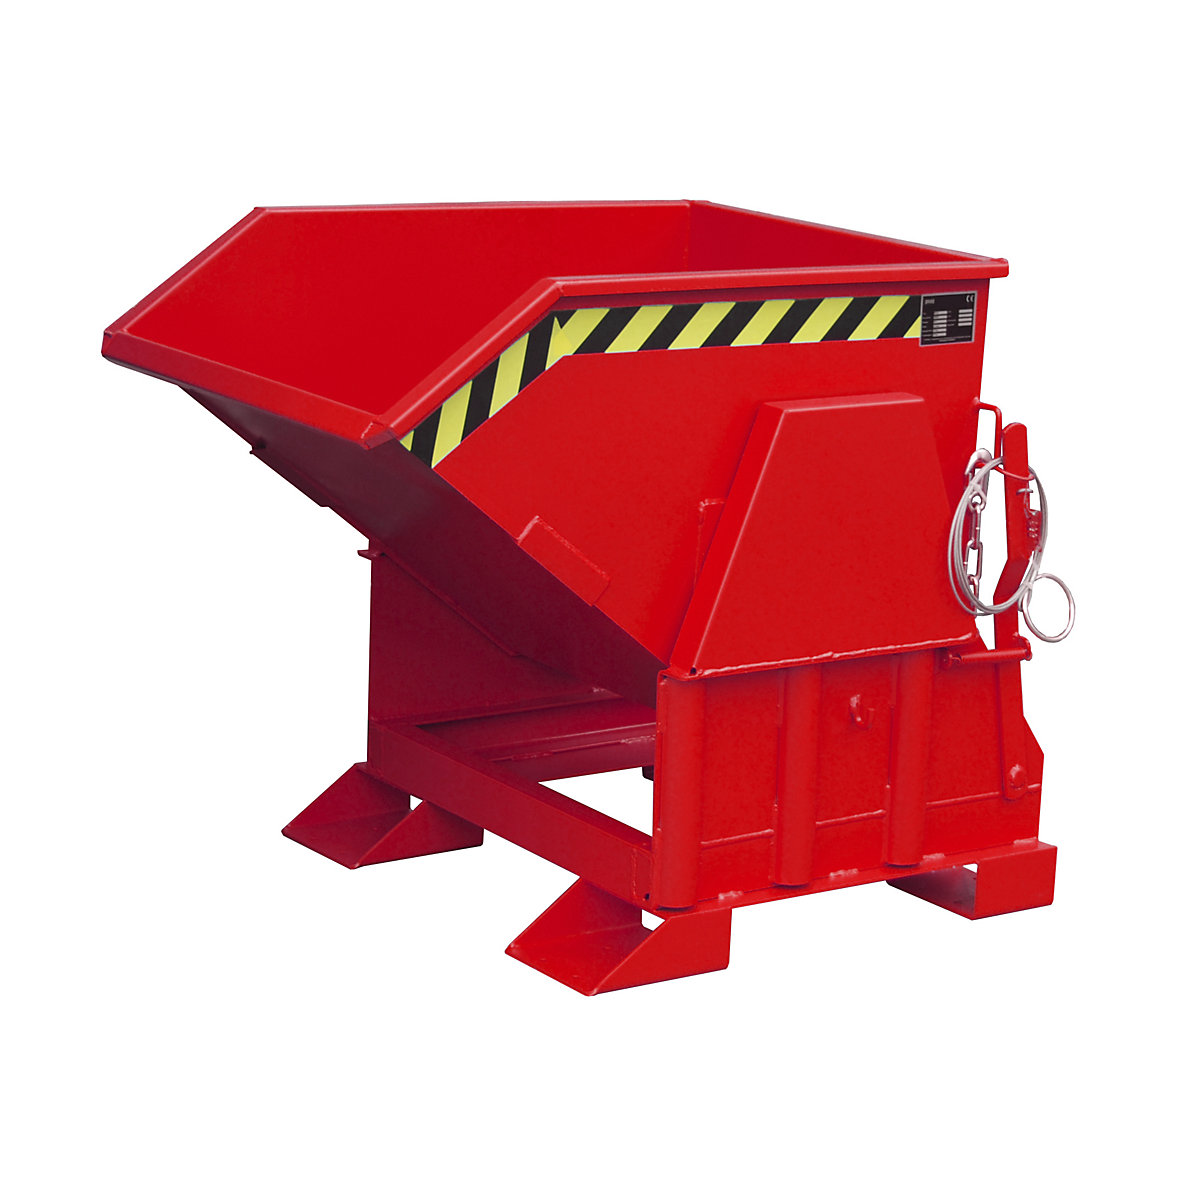 Prekucna posoda, standardna višina, brez pomičnega okvira – eurokraft pro, prostornina 0,3 m³, lakirano rdeča RAL 3000-9